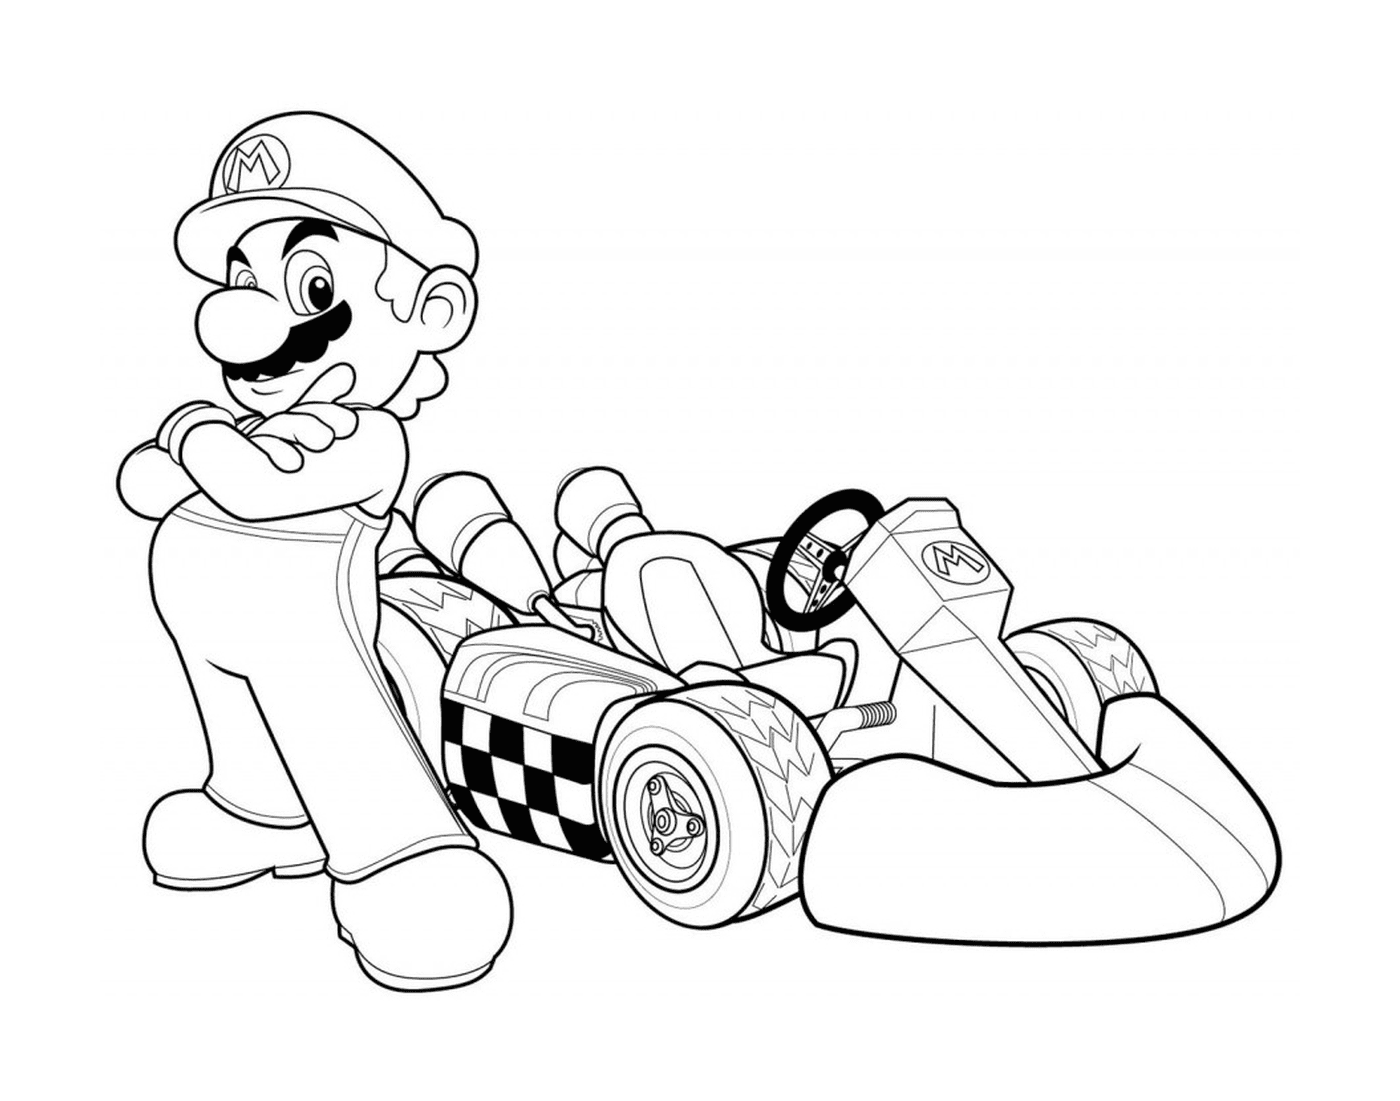  Mario Kart, un coche de Fórmula Uno 